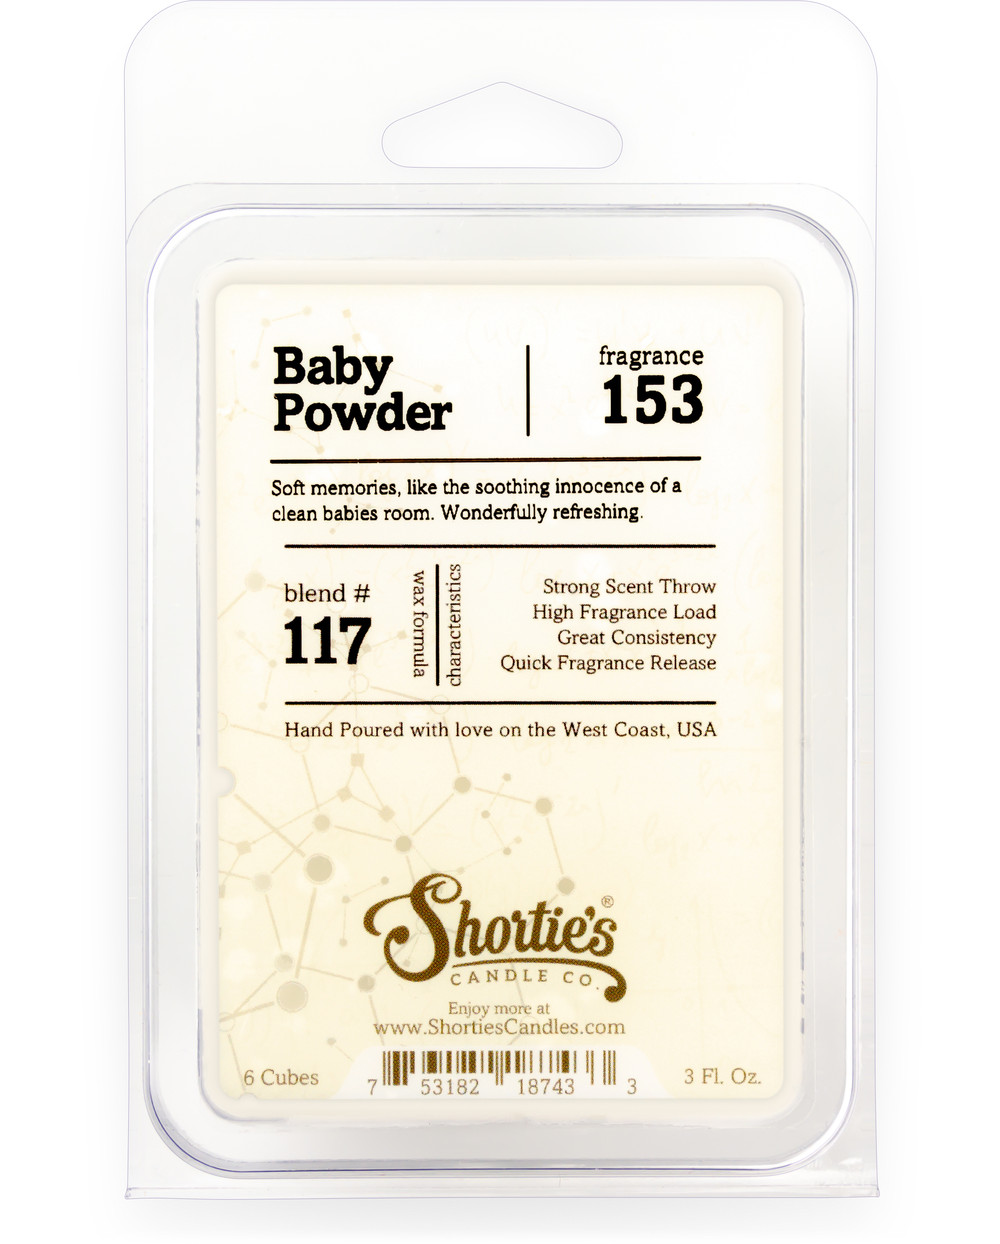 Natural Baby Powder Soy Wax Melts 3 Pack